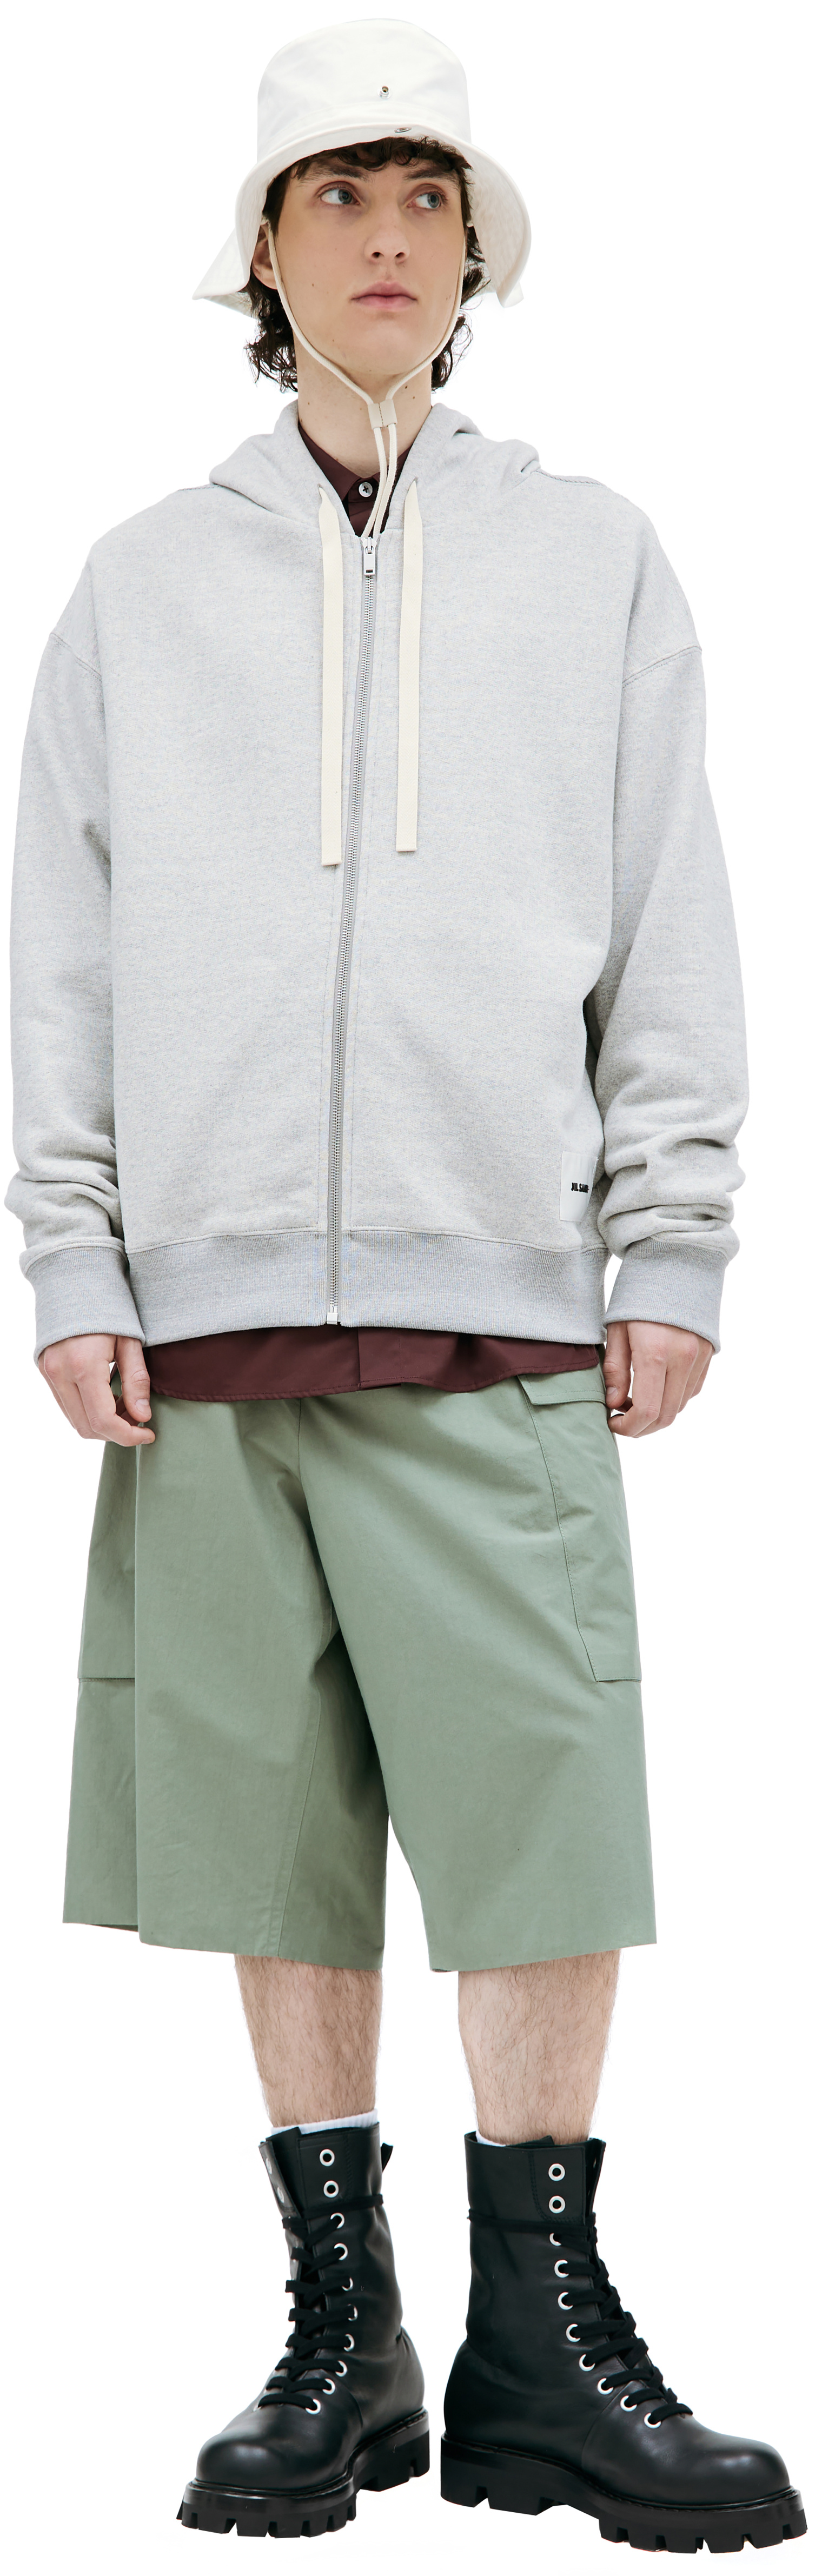 Jil Sander Grey zipped hoodie